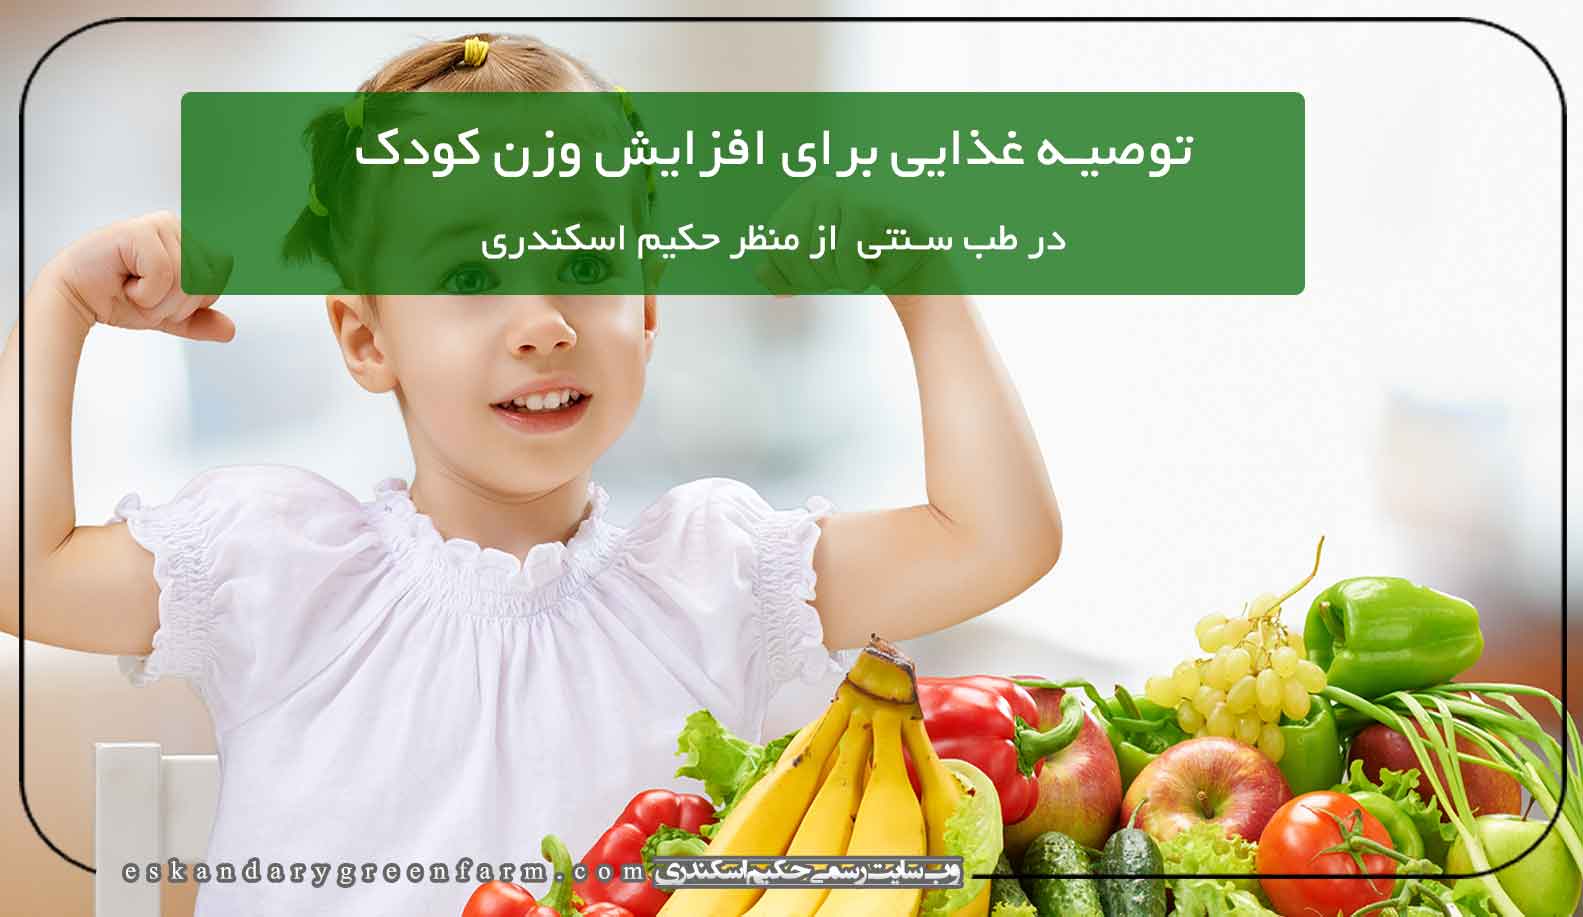 توصیه غذایی برای افزایش وزن کودک درطب سنتی از منظر حکیم اسکندری